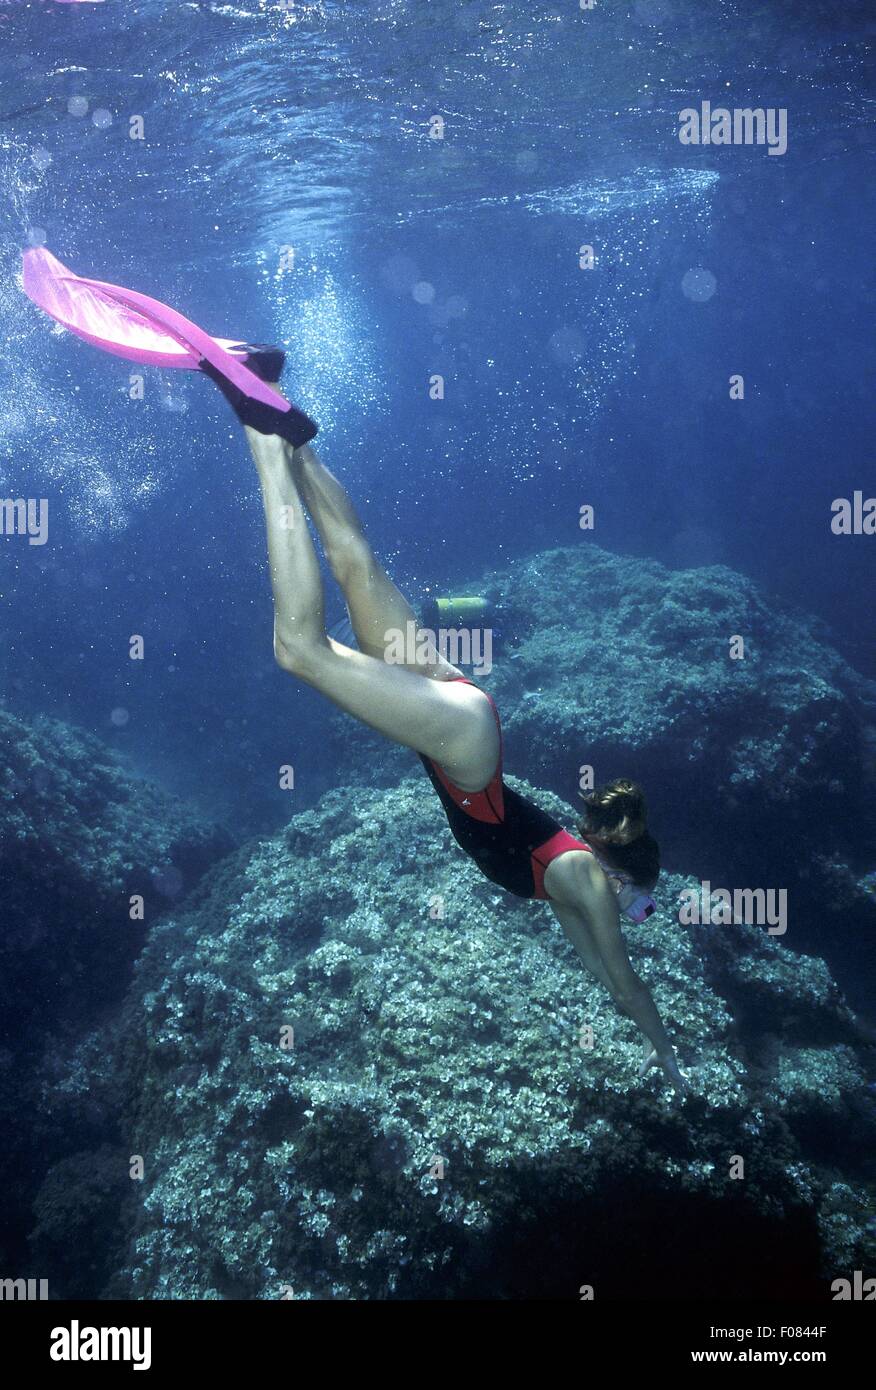 Woman wearing bikini et masque nager sous l'eau Banque D'Images